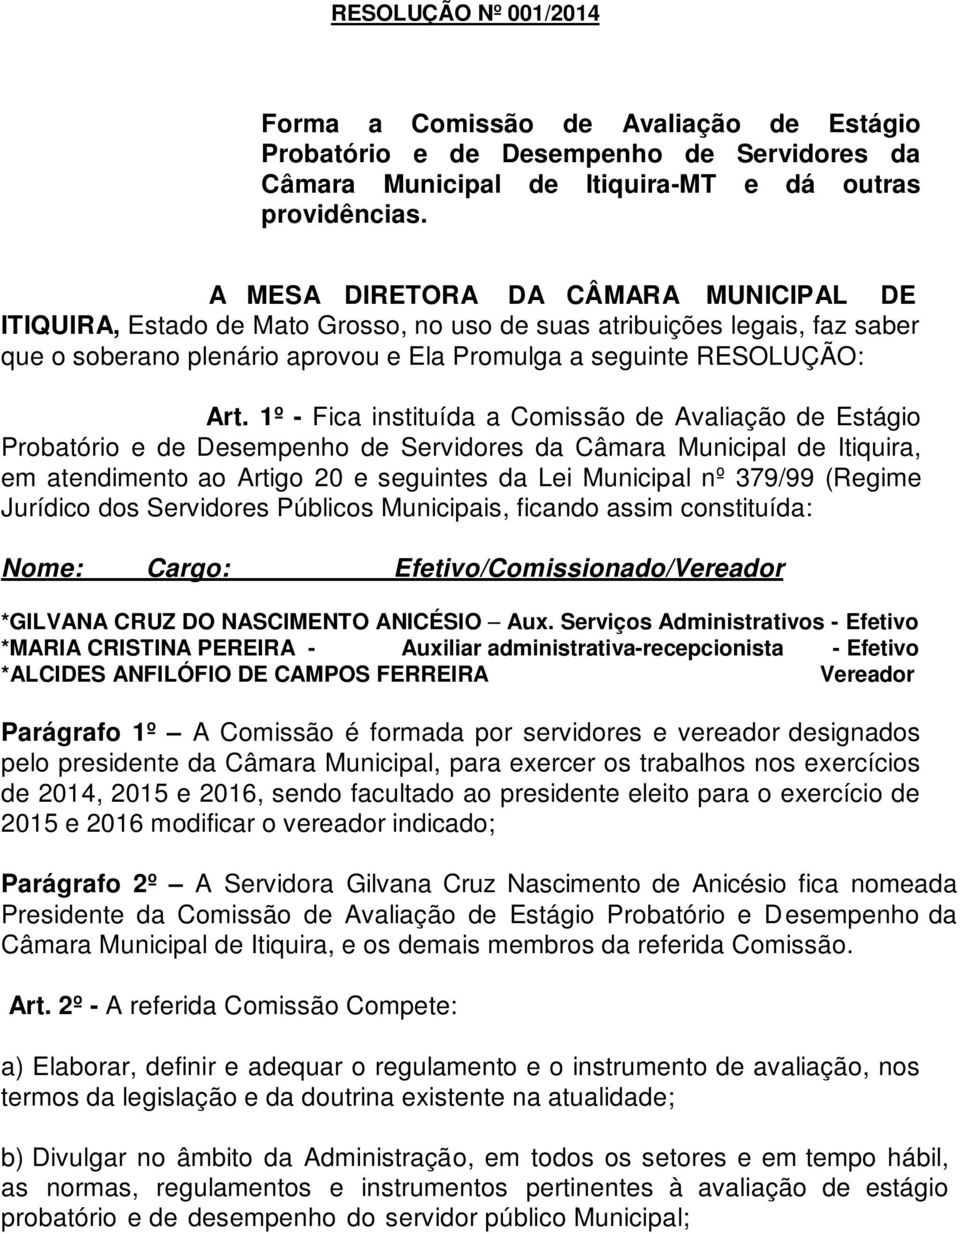 1º - Fica instituída a Comissão de Avaliação de Estágio Probatório e de Desempenho de Servidores da Câmara Municipal de Itiquira, em atendimento ao Artigo 20 e seguintes da Lei Municipal nº 379/99